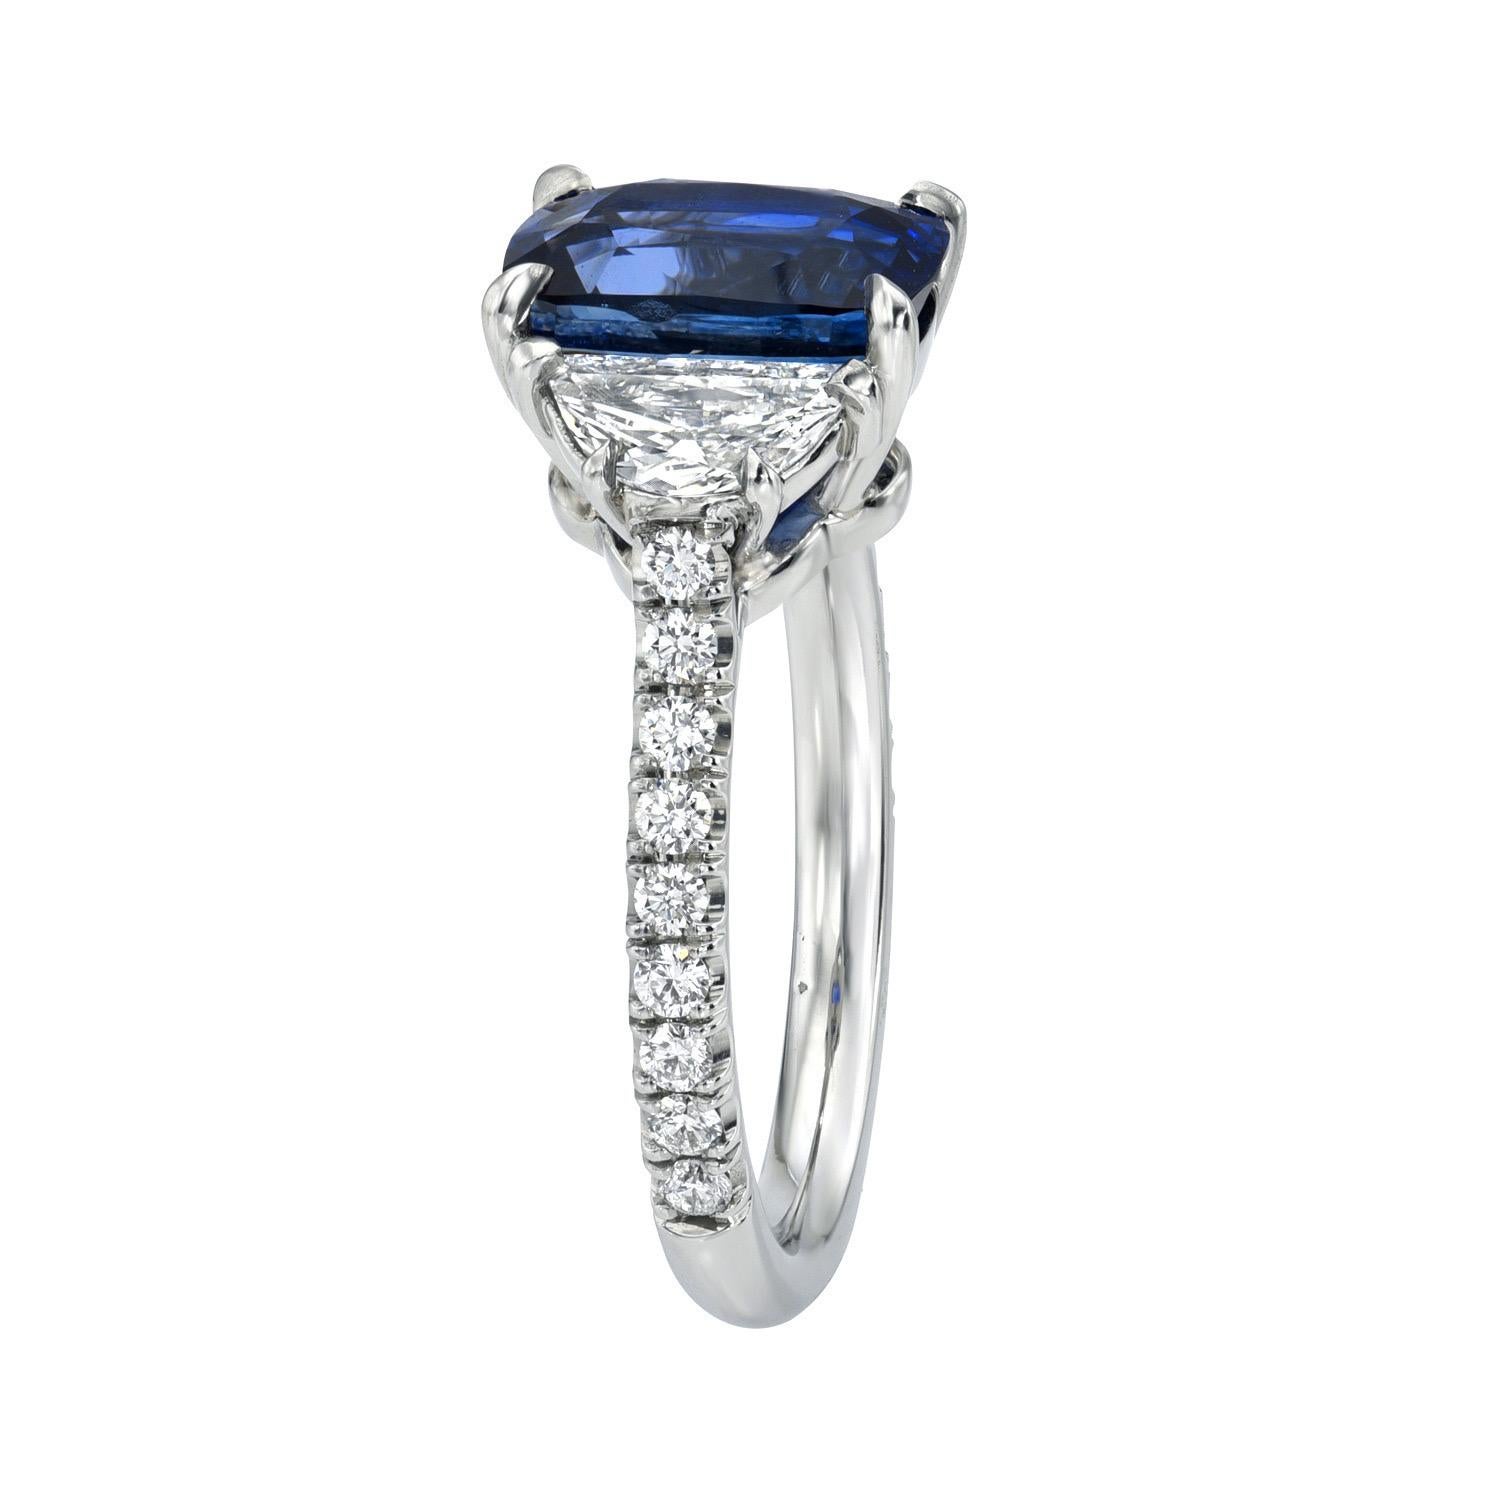 Zeitloser Ring aus Platin mit drei Steinen und einem blauen Ceylon-Saphir von 3,12 Karat, flankiert von einem Paar Halbmond-Diamanten von 0,47 Karat (E/VS1) und insgesamt 0,28 Karat runden Brillanten.
Ring Größe 6. Die Größenänderung ist auf Anfrage